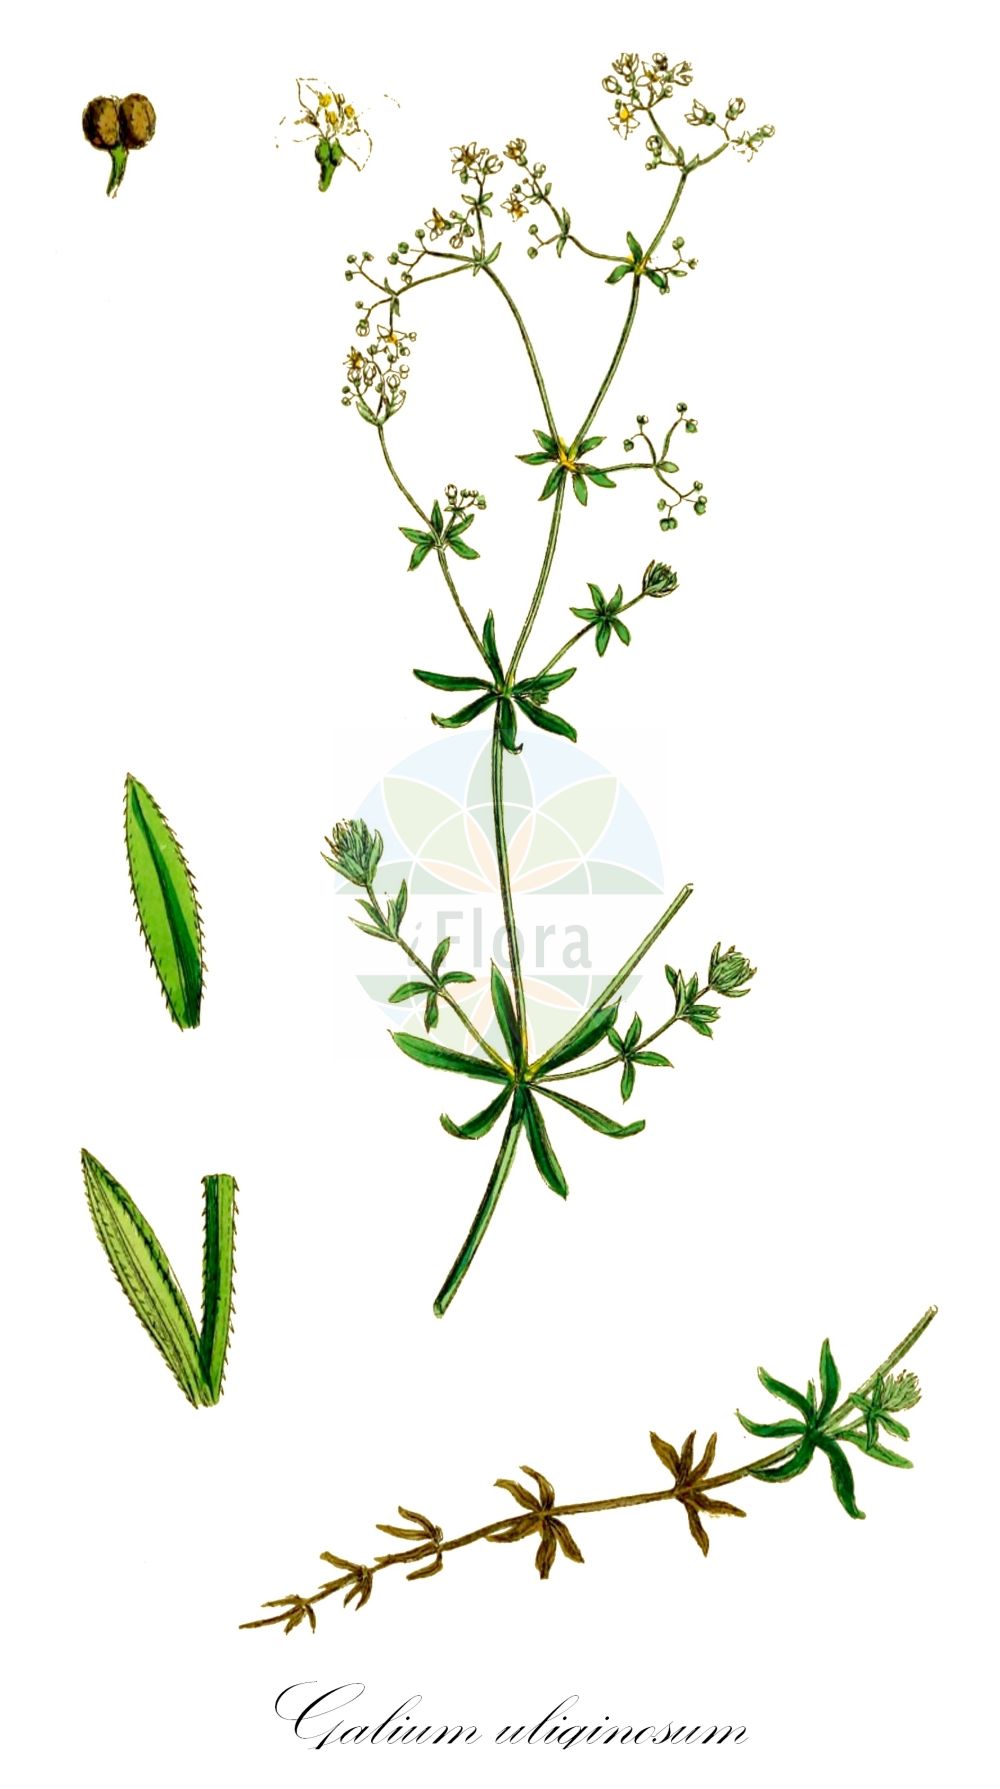 Historische Abbildung von Galium uliginosum (Moor-Labkraut - Fen Bedstraw). Das Bild zeigt Blatt, Bluete, Frucht und Same. ---- Historical Drawing of Galium uliginosum (Moor-Labkraut - Fen Bedstraw). The image is showing leaf, flower, fruit and seed.(Galium uliginosum,Moor-Labkraut,Fen Bedstraw,Galium uliginosum,Galium uliginosum L. subsp.,Moor-Labkraut,Fen Bedstraw,Galium,Labkraut,Bedstraw,Rubiaceae,Rötegewächse,Bedstraw family,Blatt,Bluete,Frucht,Same,leaf,flower,fruit,seed,Sowerby (1790-1813))